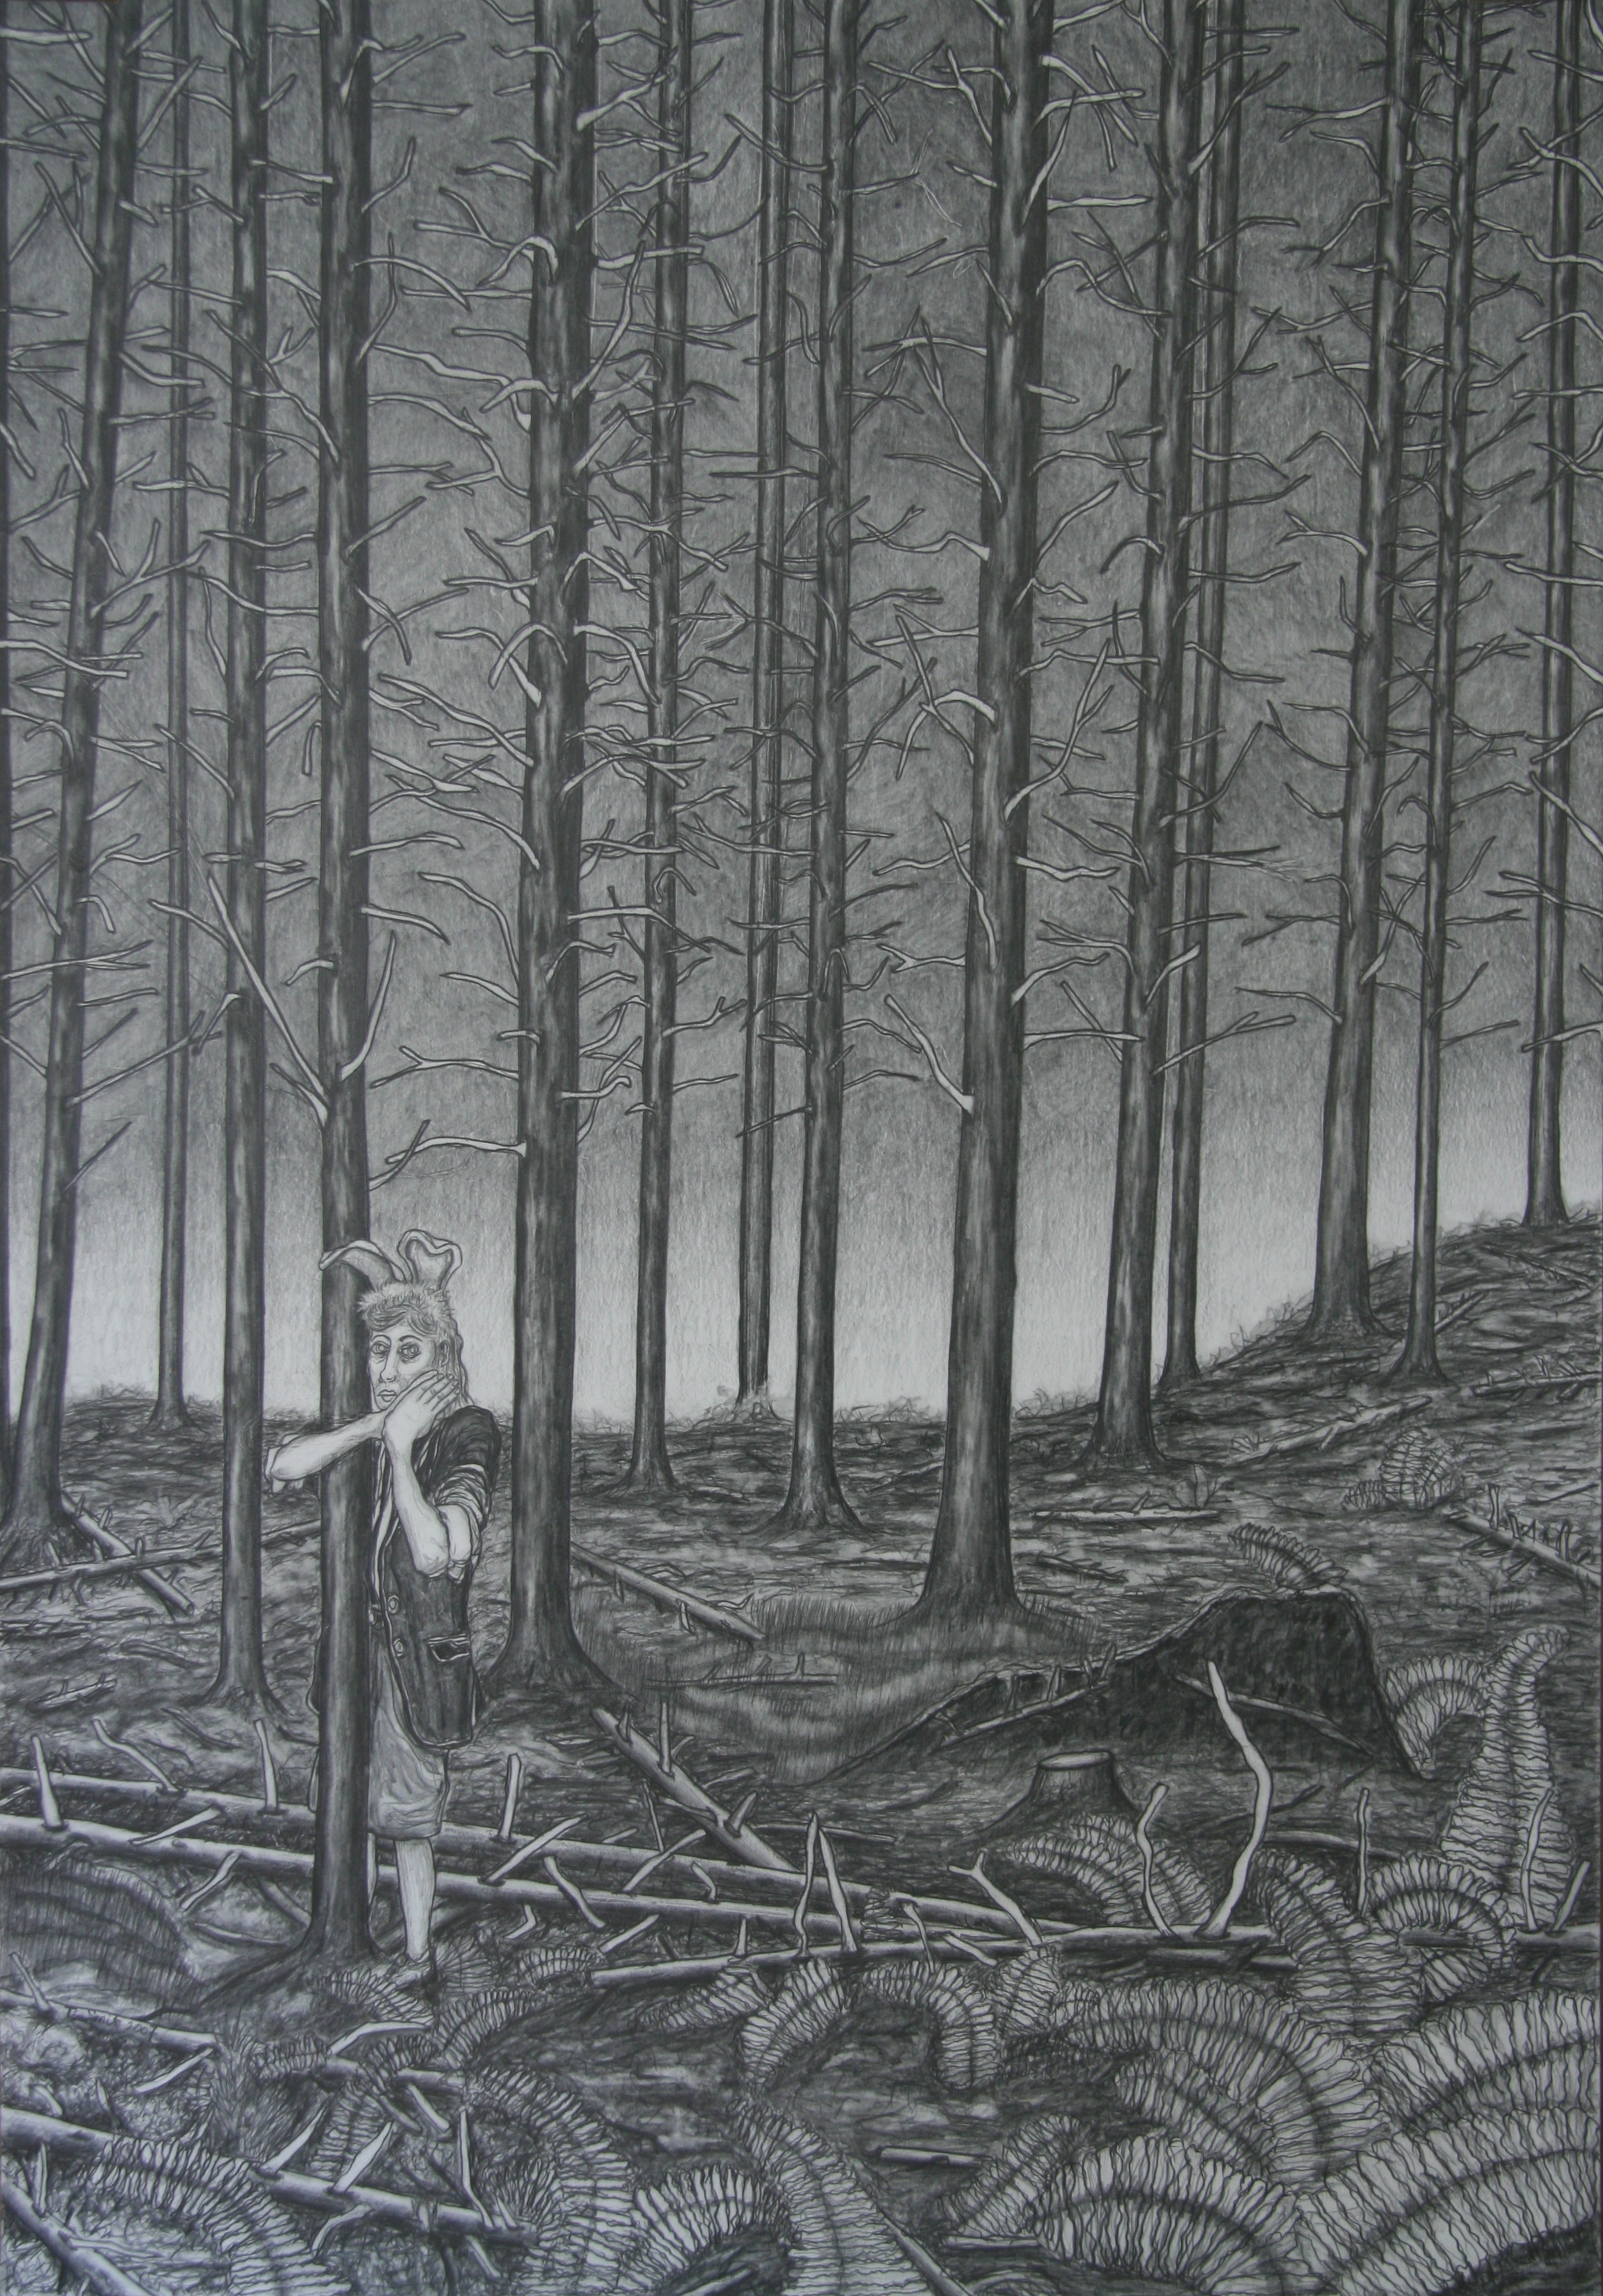 Alleen in het woud, 100x70cm, pencil on paper 